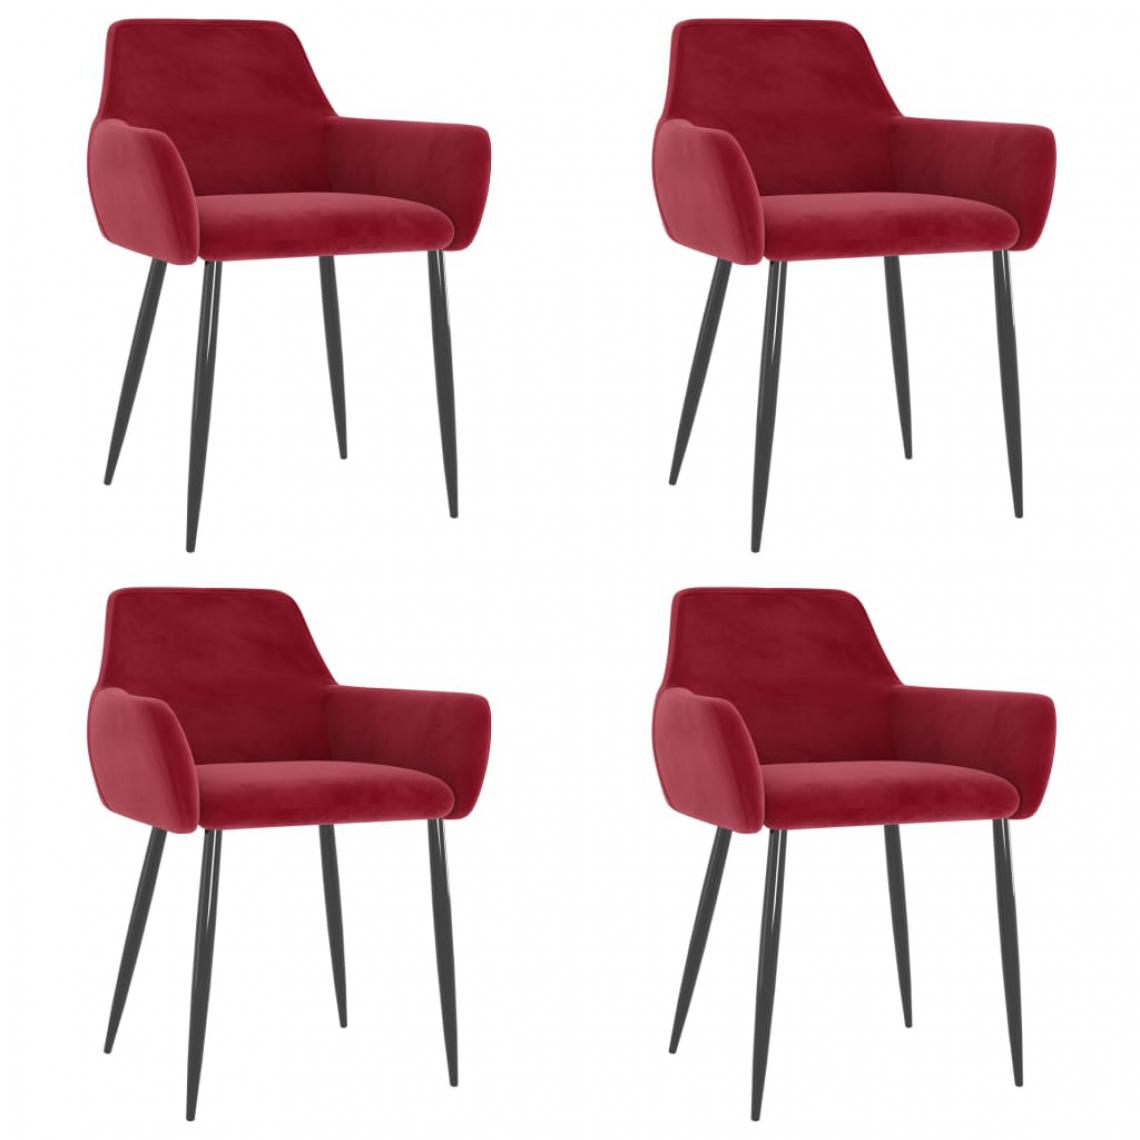 Chunhelife - Chunhelife Chaises de salle à manger 4 pcs Rouge bordeaux Velours - Chaises